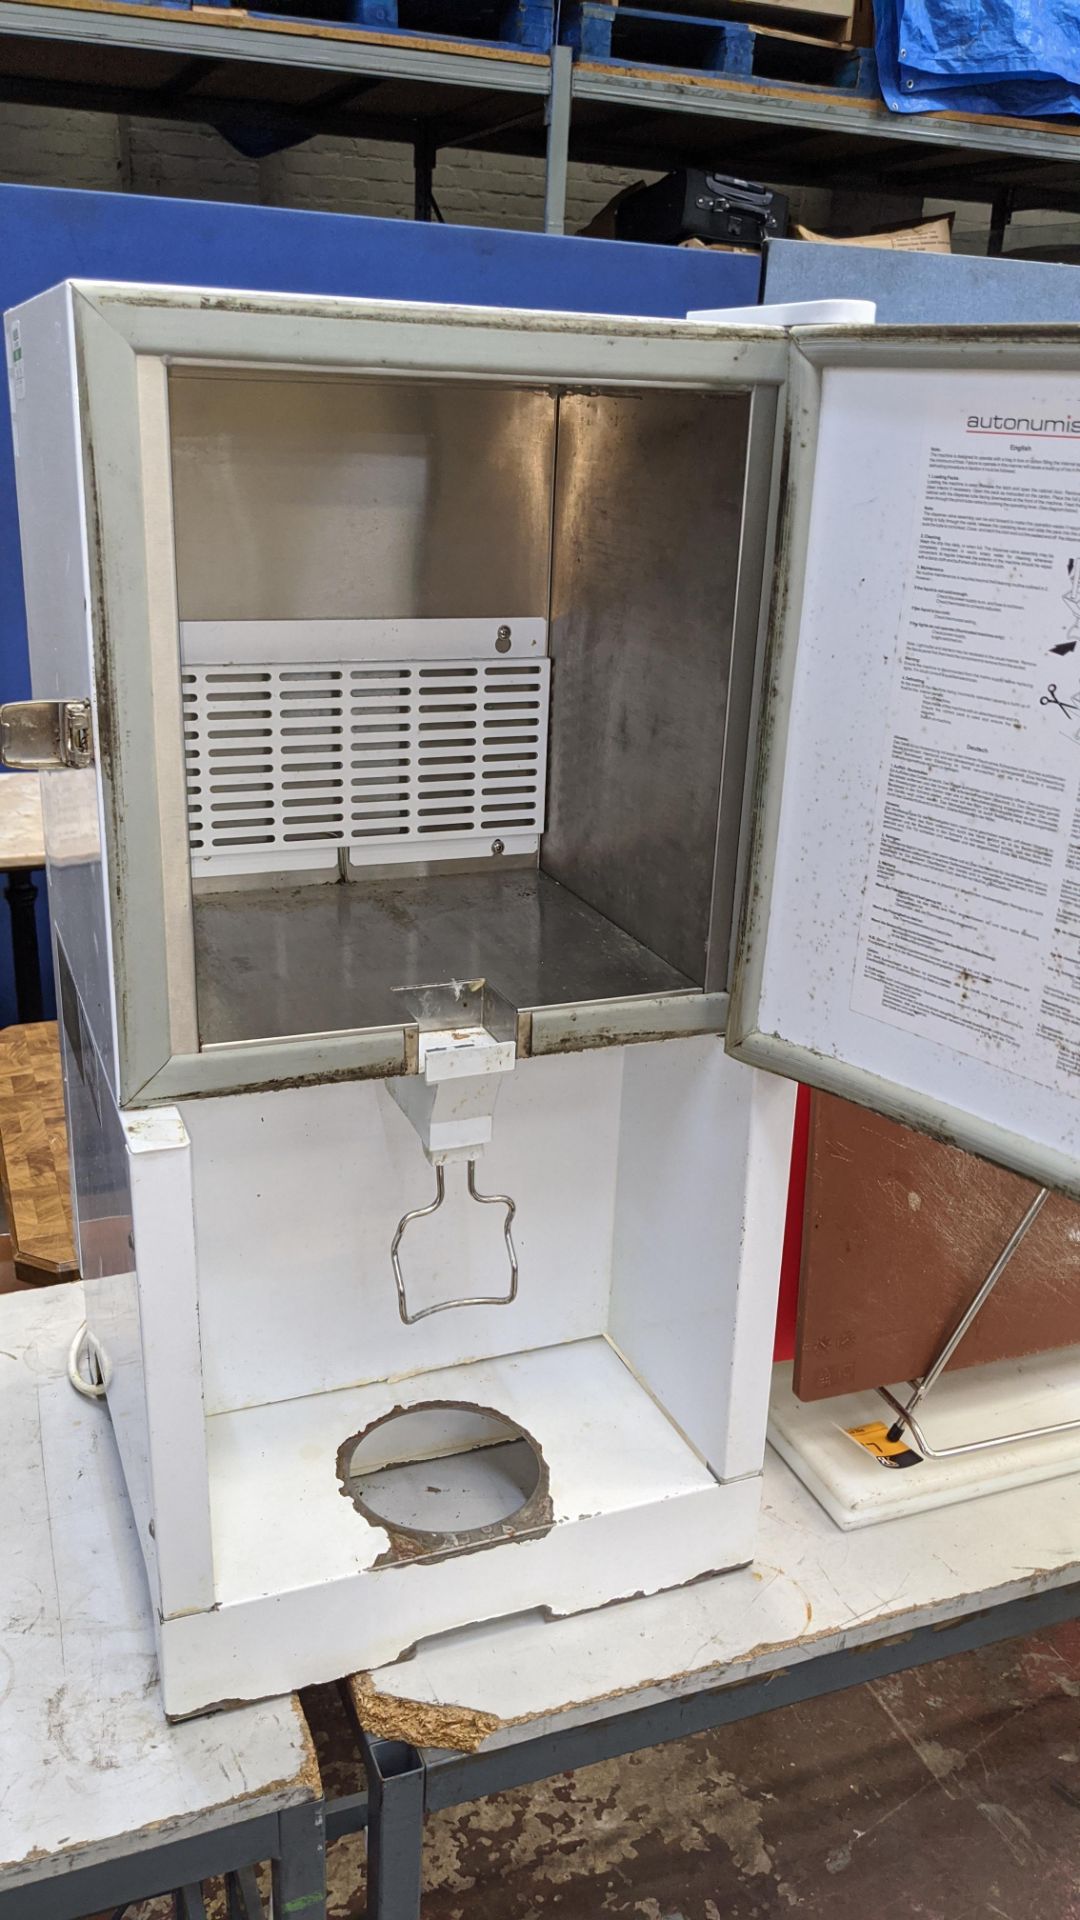 Autonumis milk cooler dispenser - Image 3 of 4